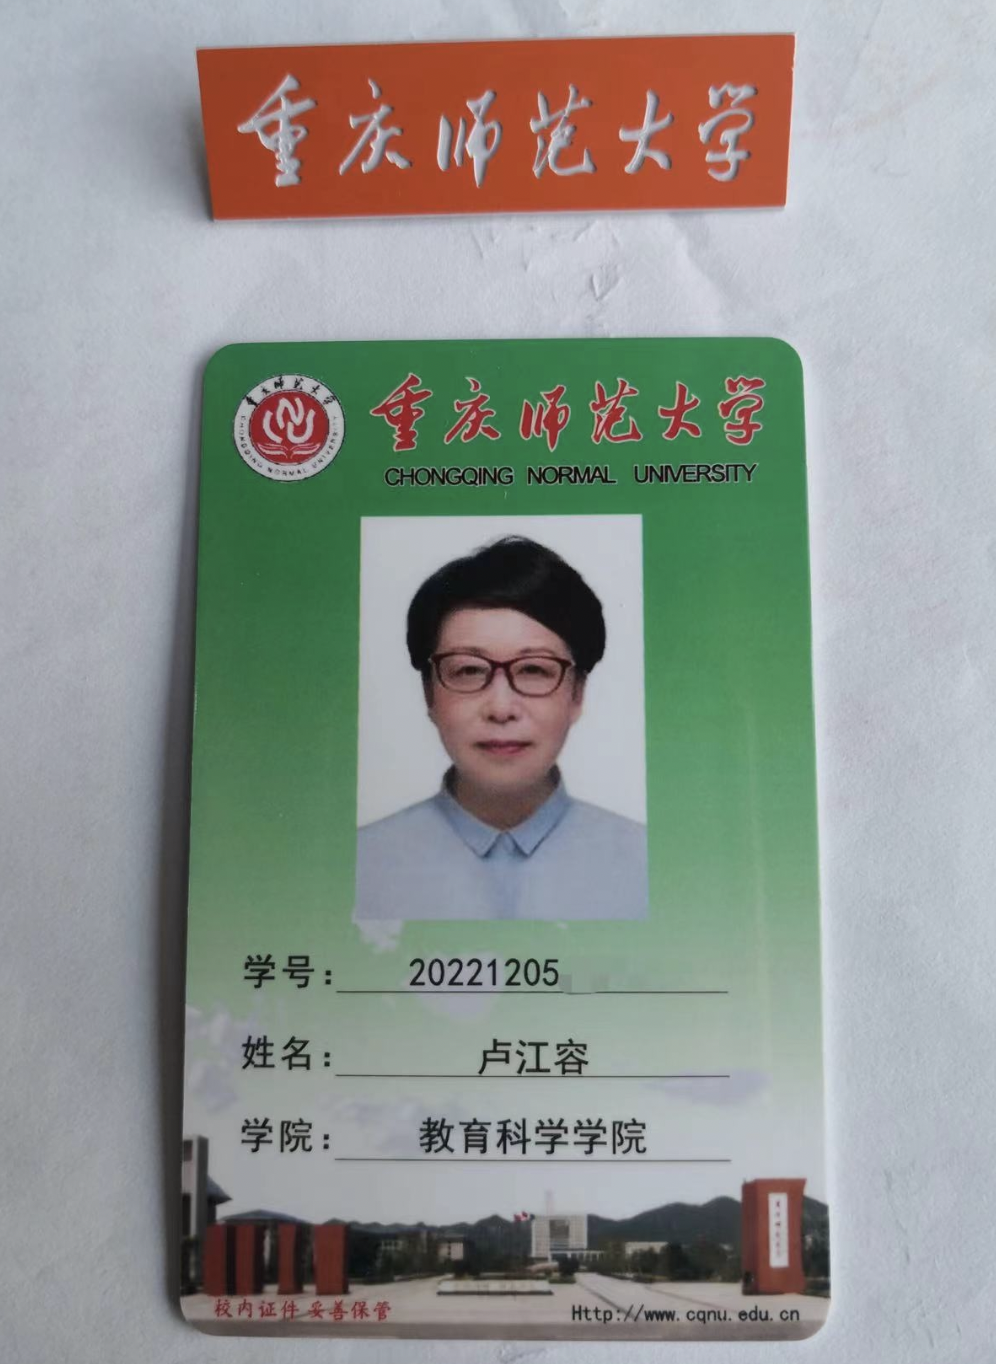 卢江容的学生证和校徽。受访者供图